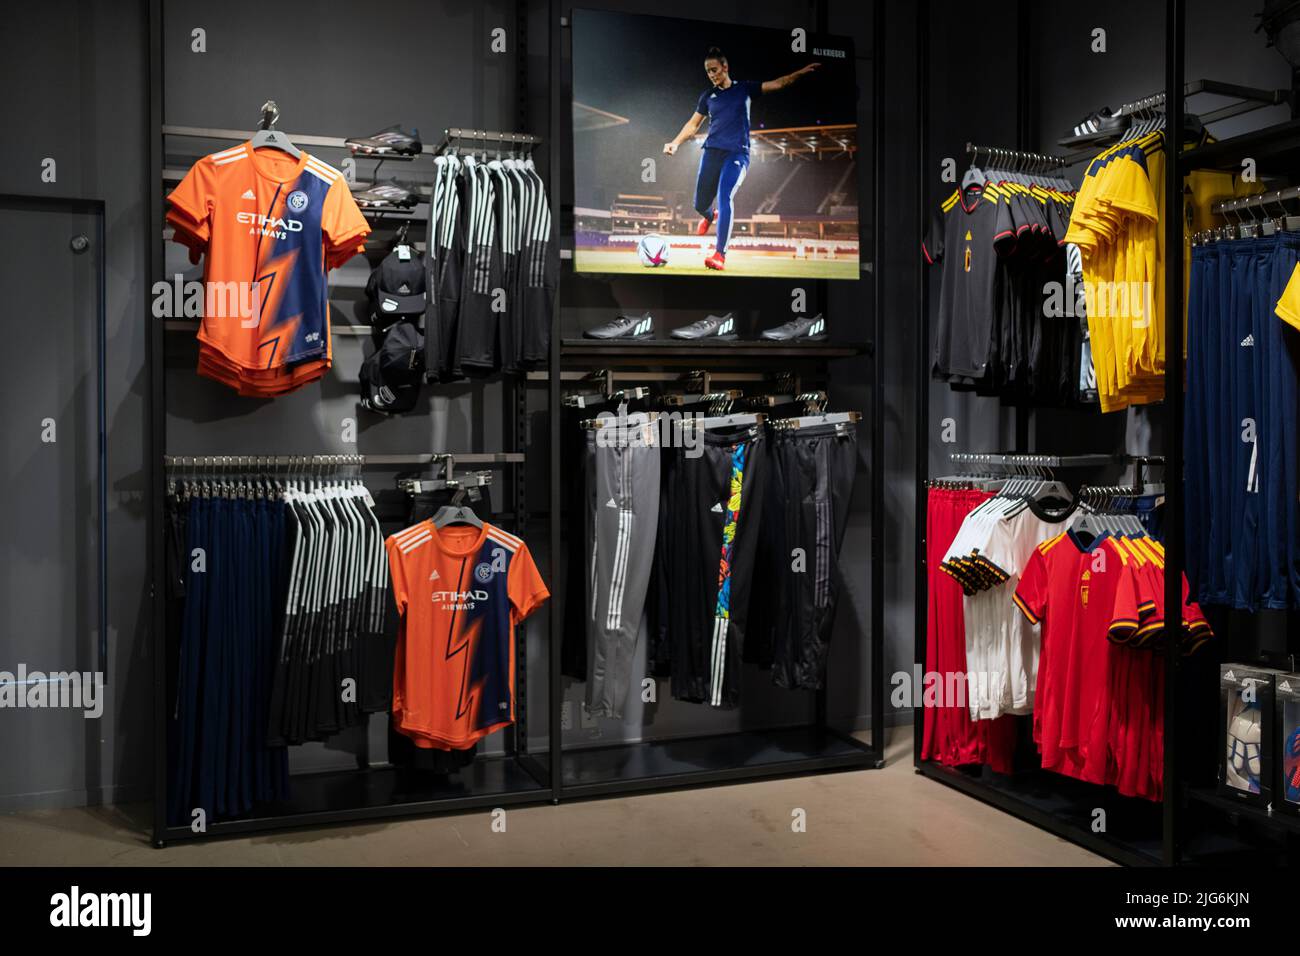 Vêtements de football pour femmes en vente au magasin adidas de Broadway, dans le Lower manhattan, New York. Comprend des maillots colorés et une grande photo d'Ali Kreiger. Banque D'Images